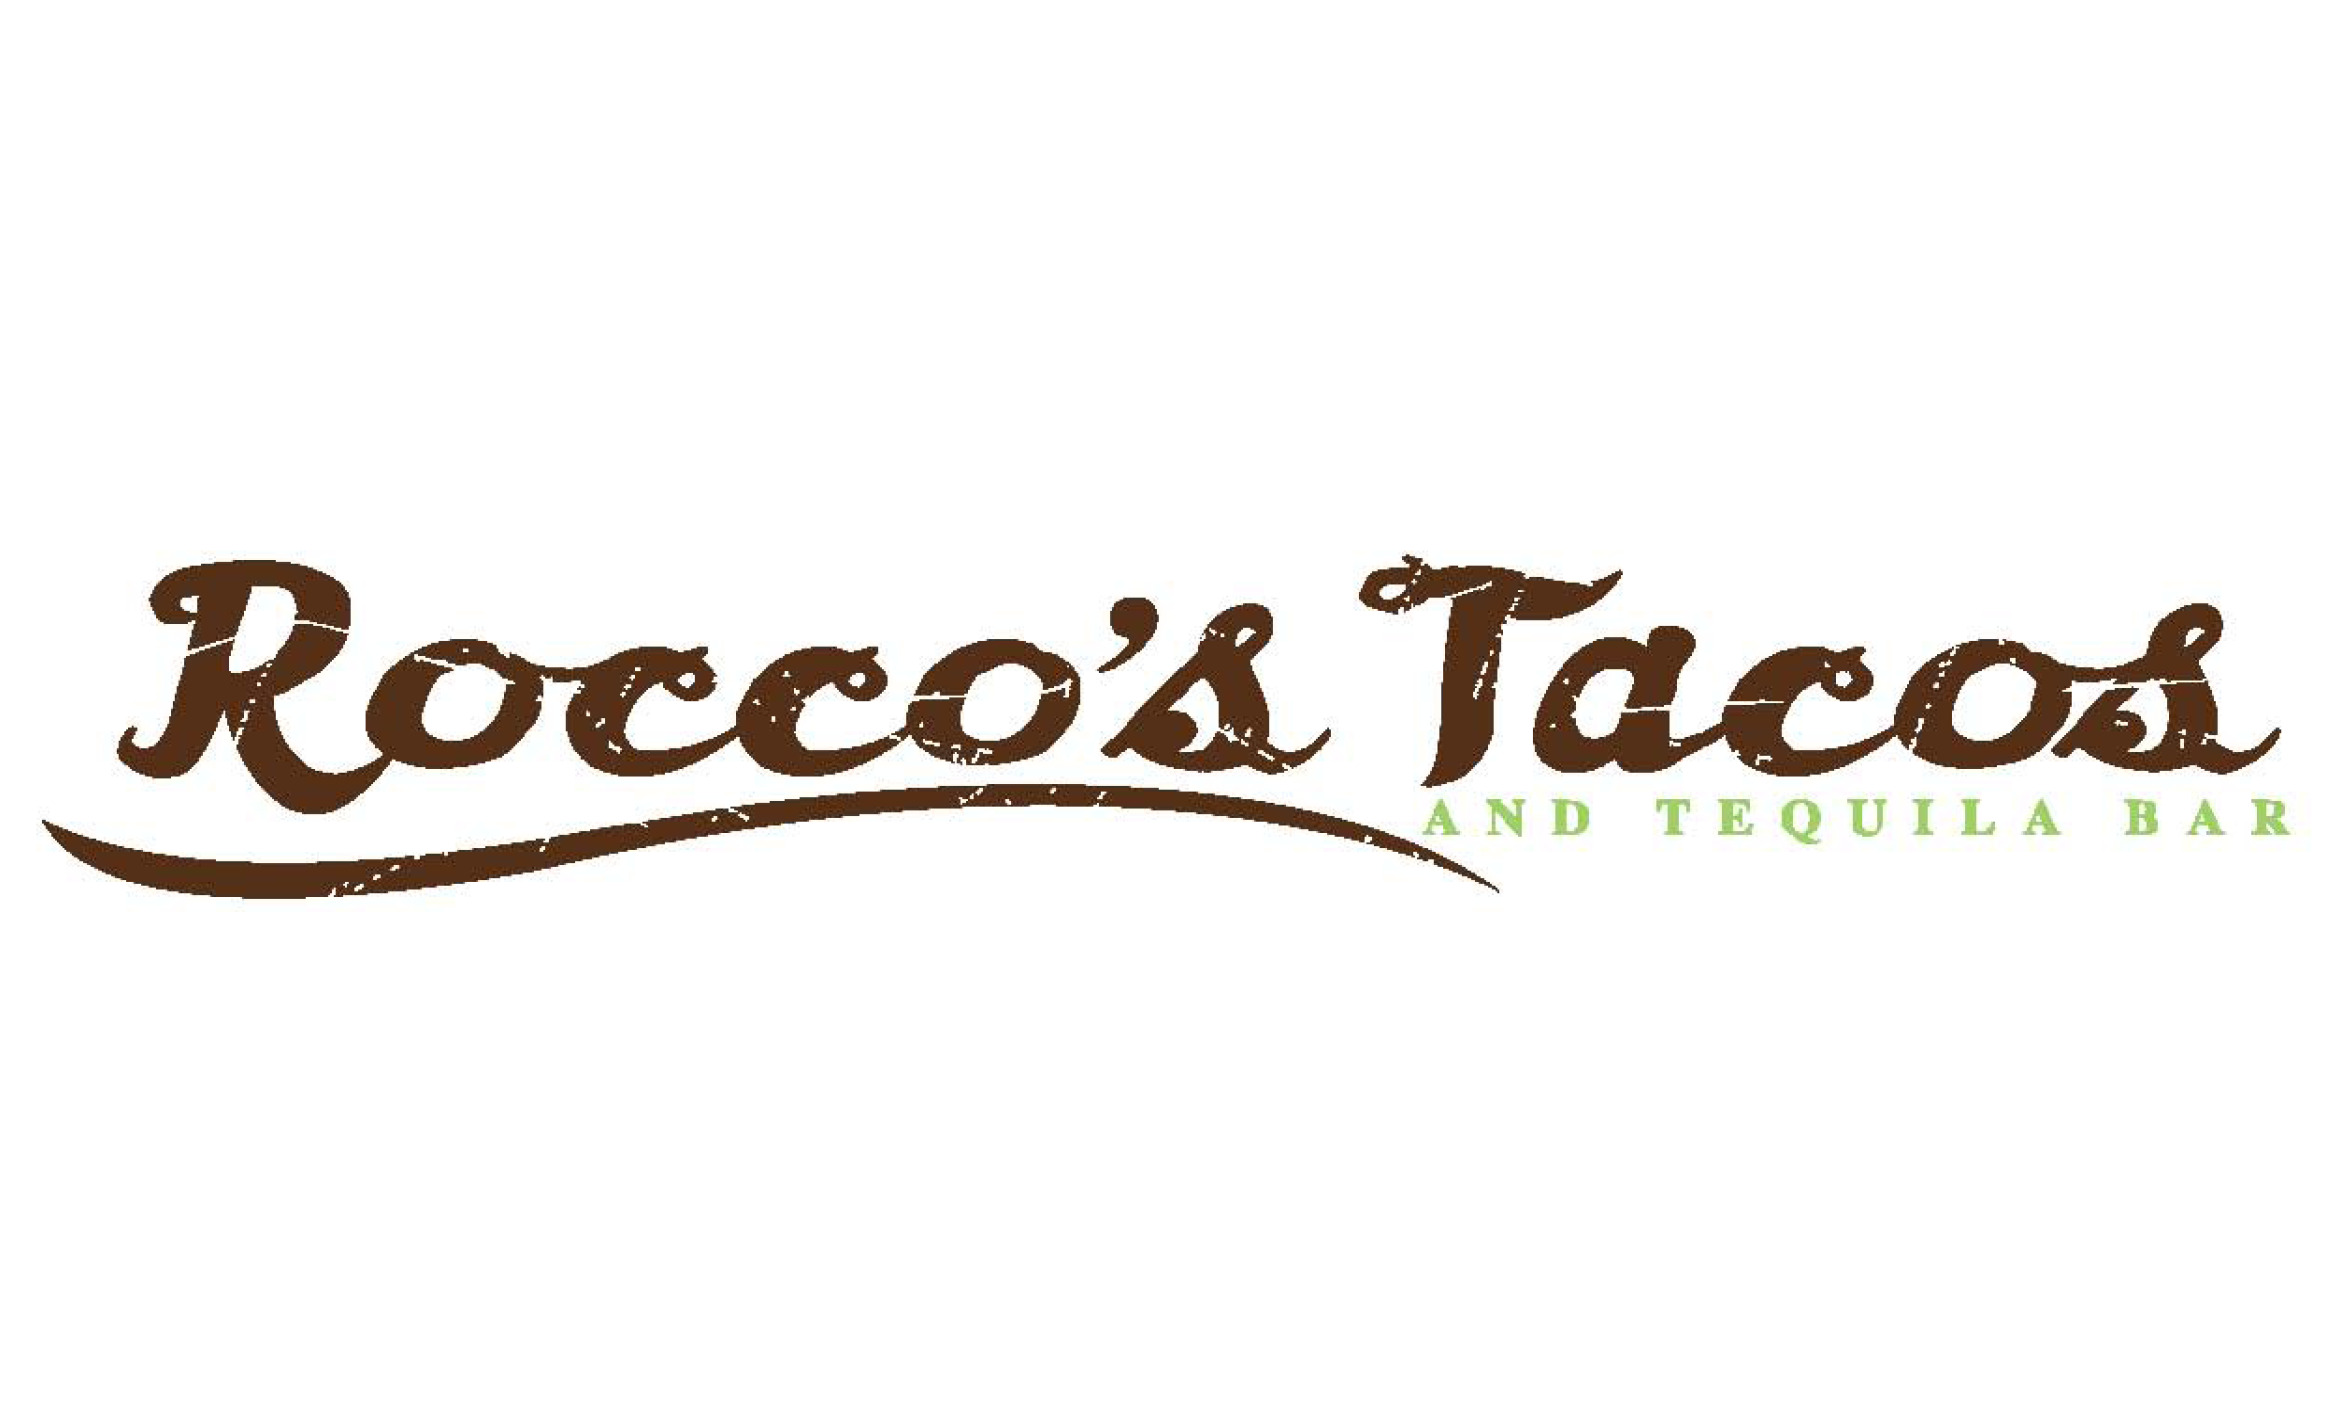 Rocco’s Tacos